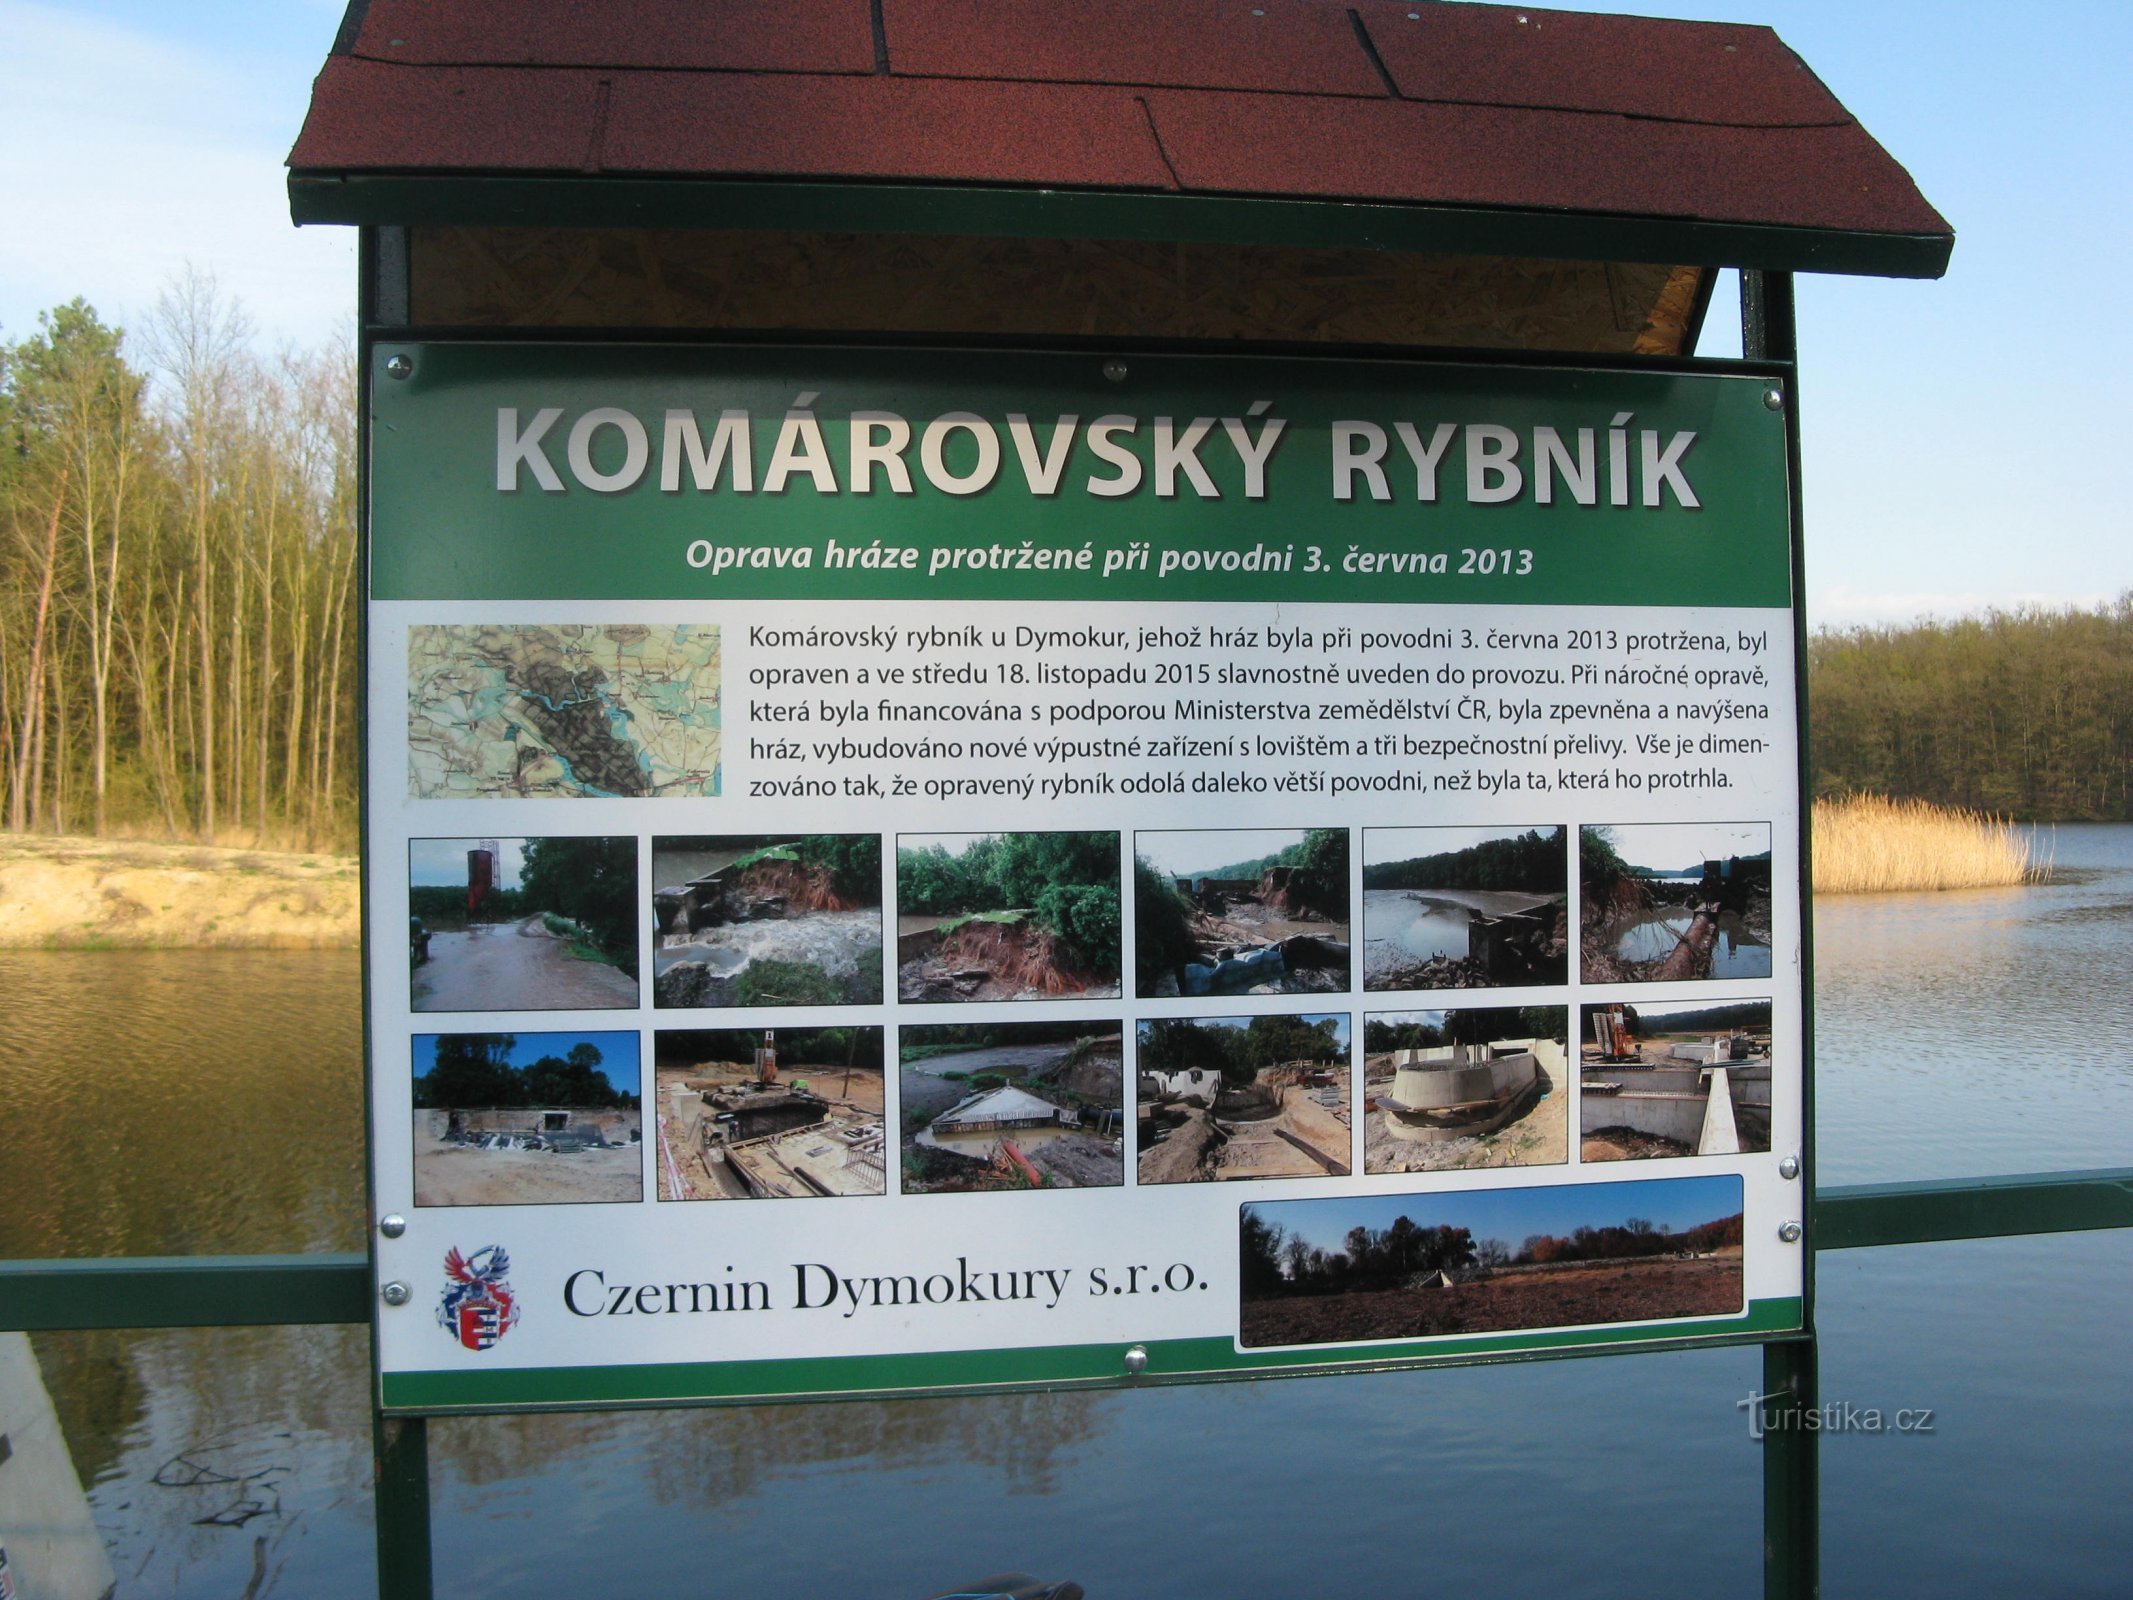 Iaz Komárovský lângă Svídnice în Nymburk